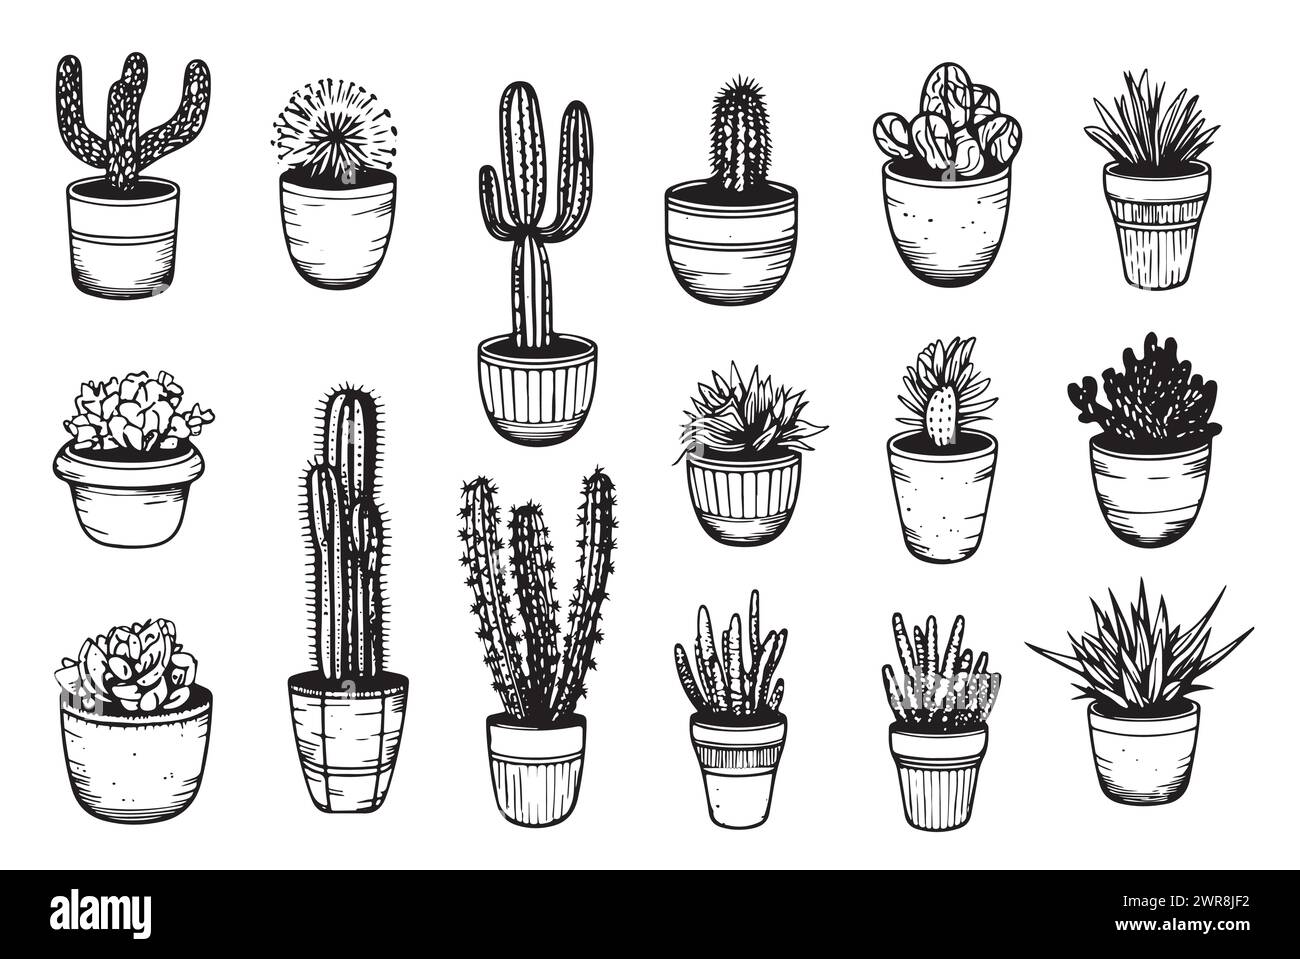 Conjunto de plantas de cactus en macetas dibujado a mano ilustración vectorial de doodle, clipart de cactus aislado Ilustración del Vector